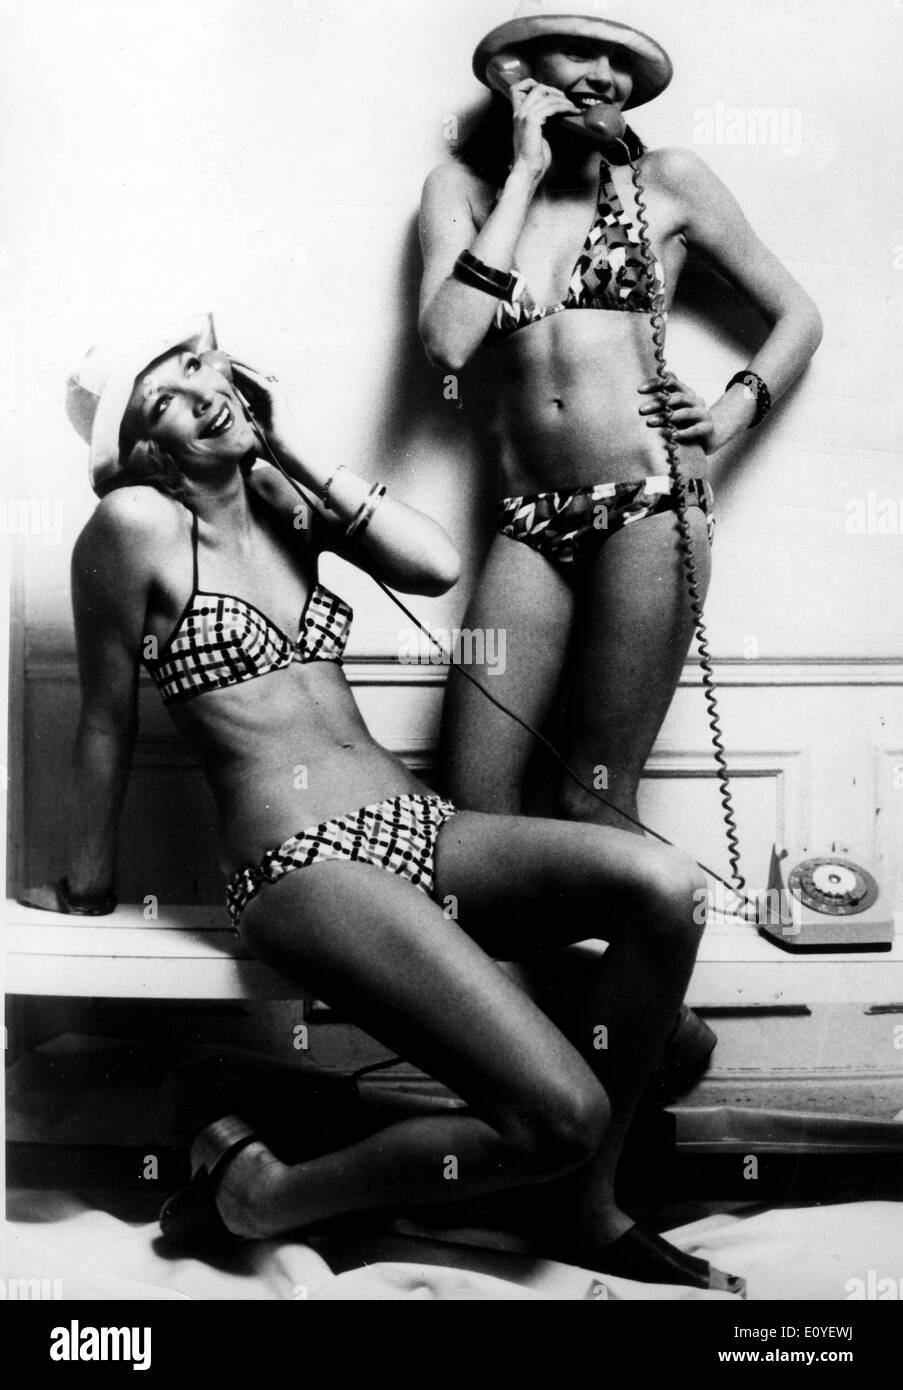 01 janv., 1970 - Londres, Angleterre, Royaume-Uni - Photo : 1960 des années  70. Jeunes filles posant en bikini dans des défilés de mode, les pousses et  sur les plages de bronzage.